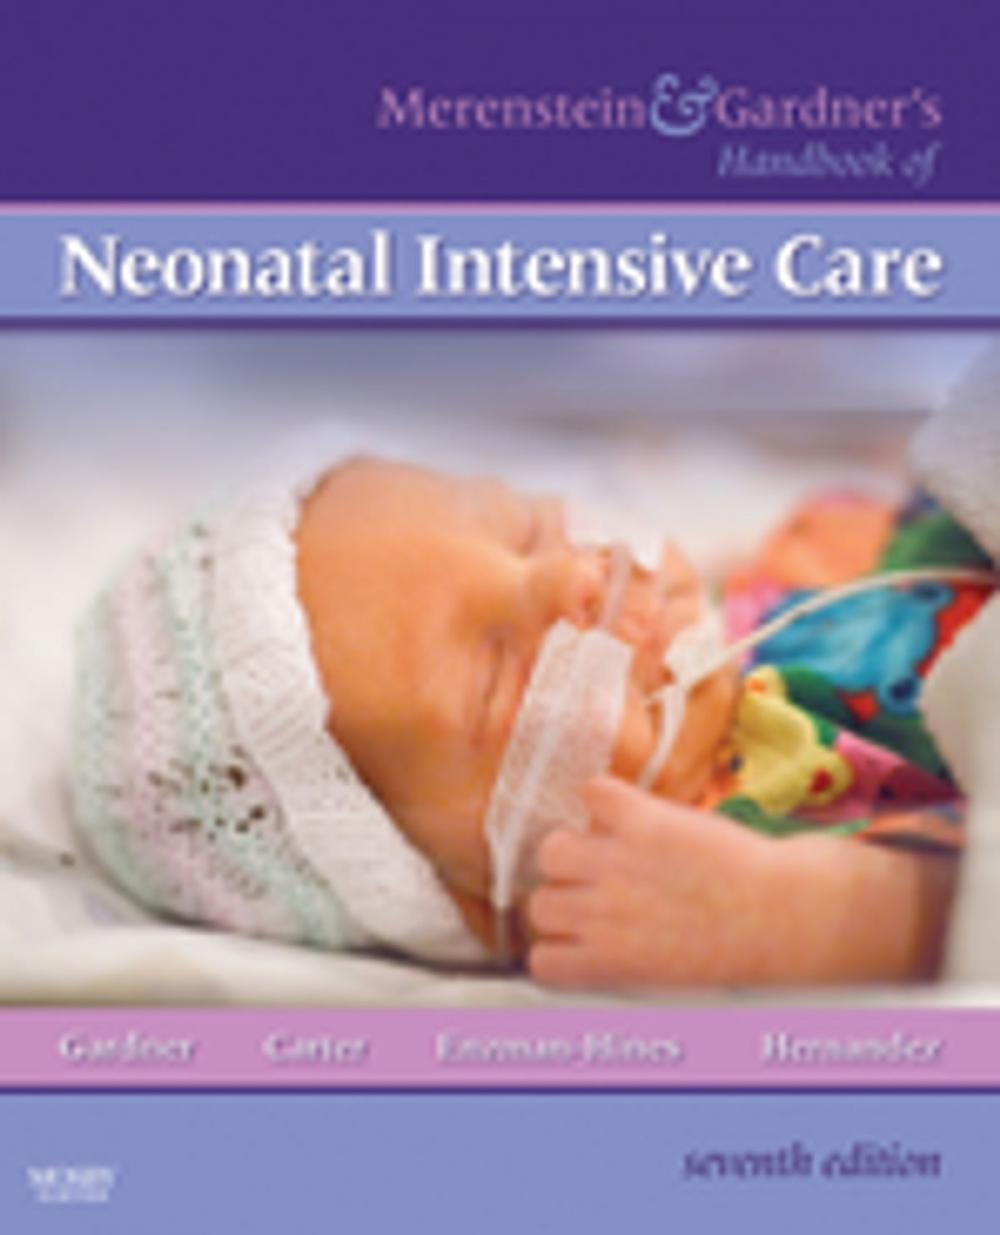 Big bigCover of Merenstein & Gardner's Handbook of Neonatal Intensive Care